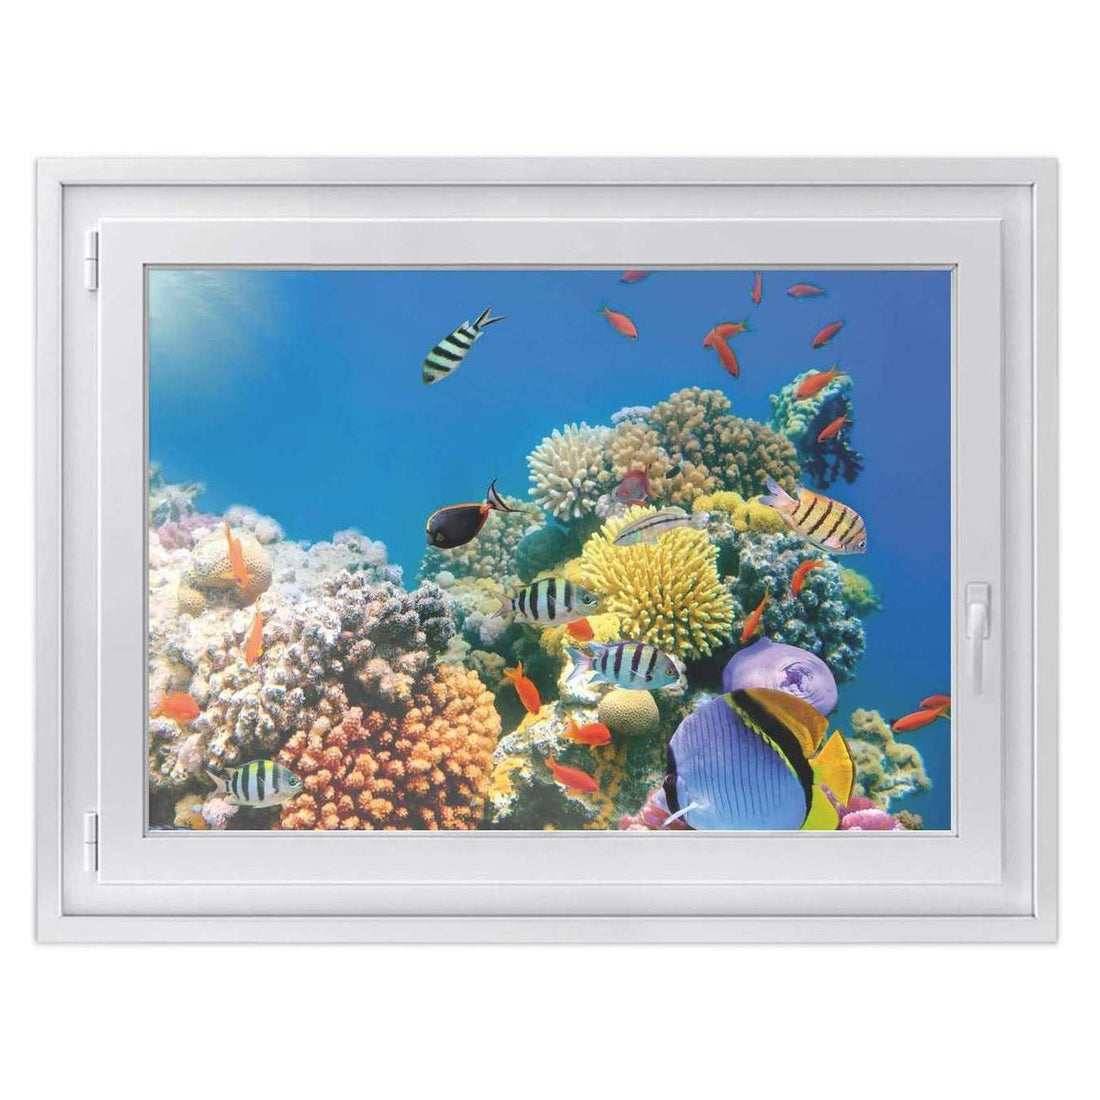 Fensterfolie [quer] -Coral Reef- Größe: 100x70 cm